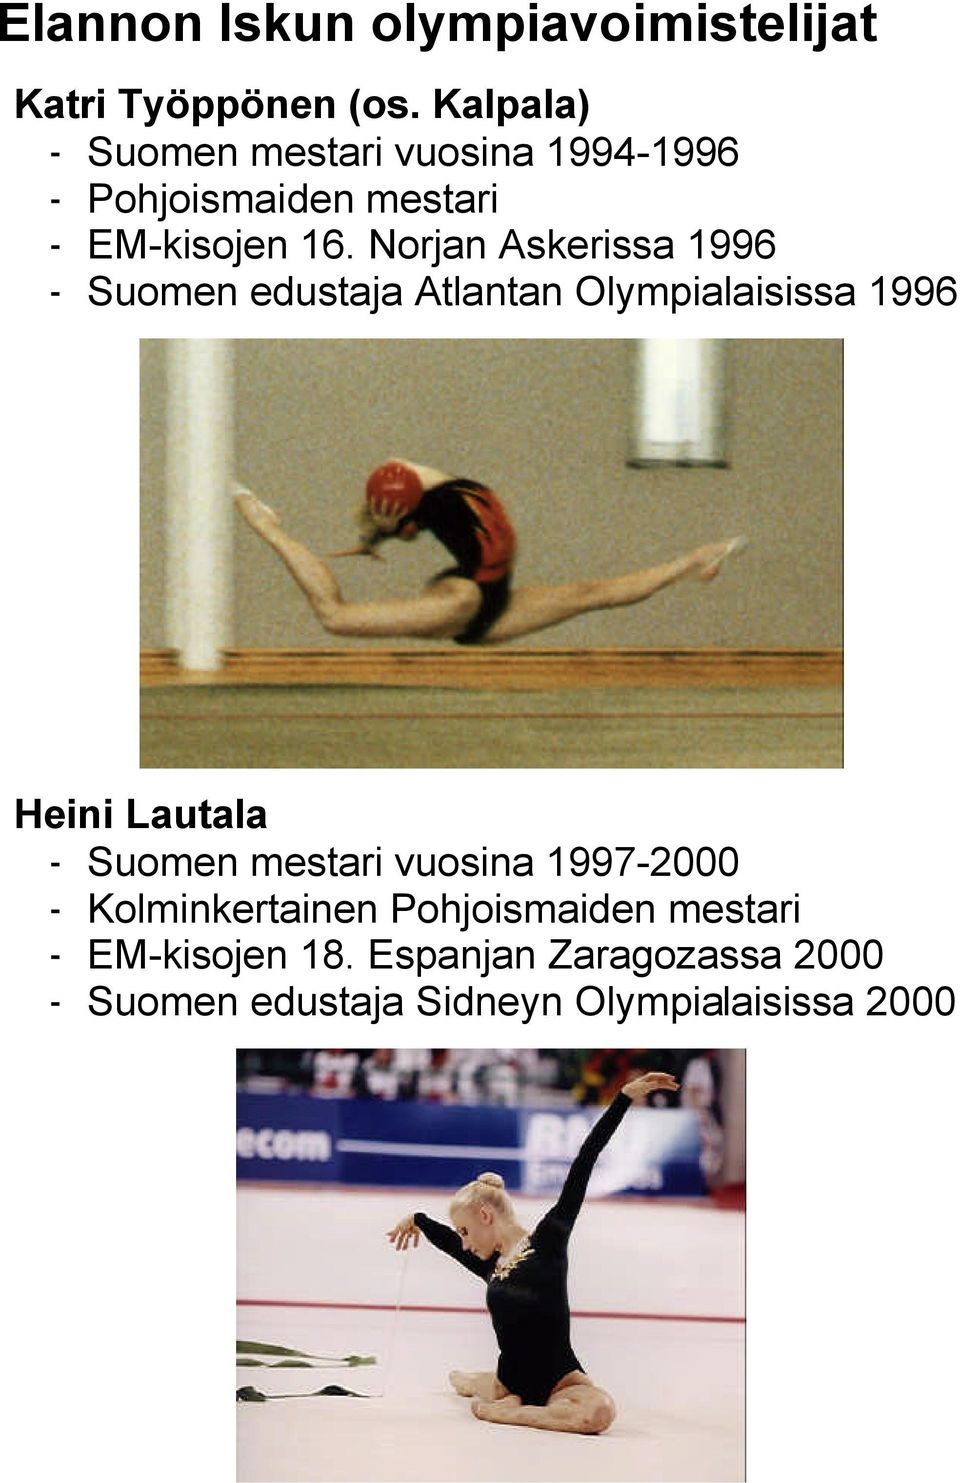 Norjan Askerissa 1996 - Suomen edustaja Atlantan Olympialaisissa 1996 Heini Lautala - Suomen